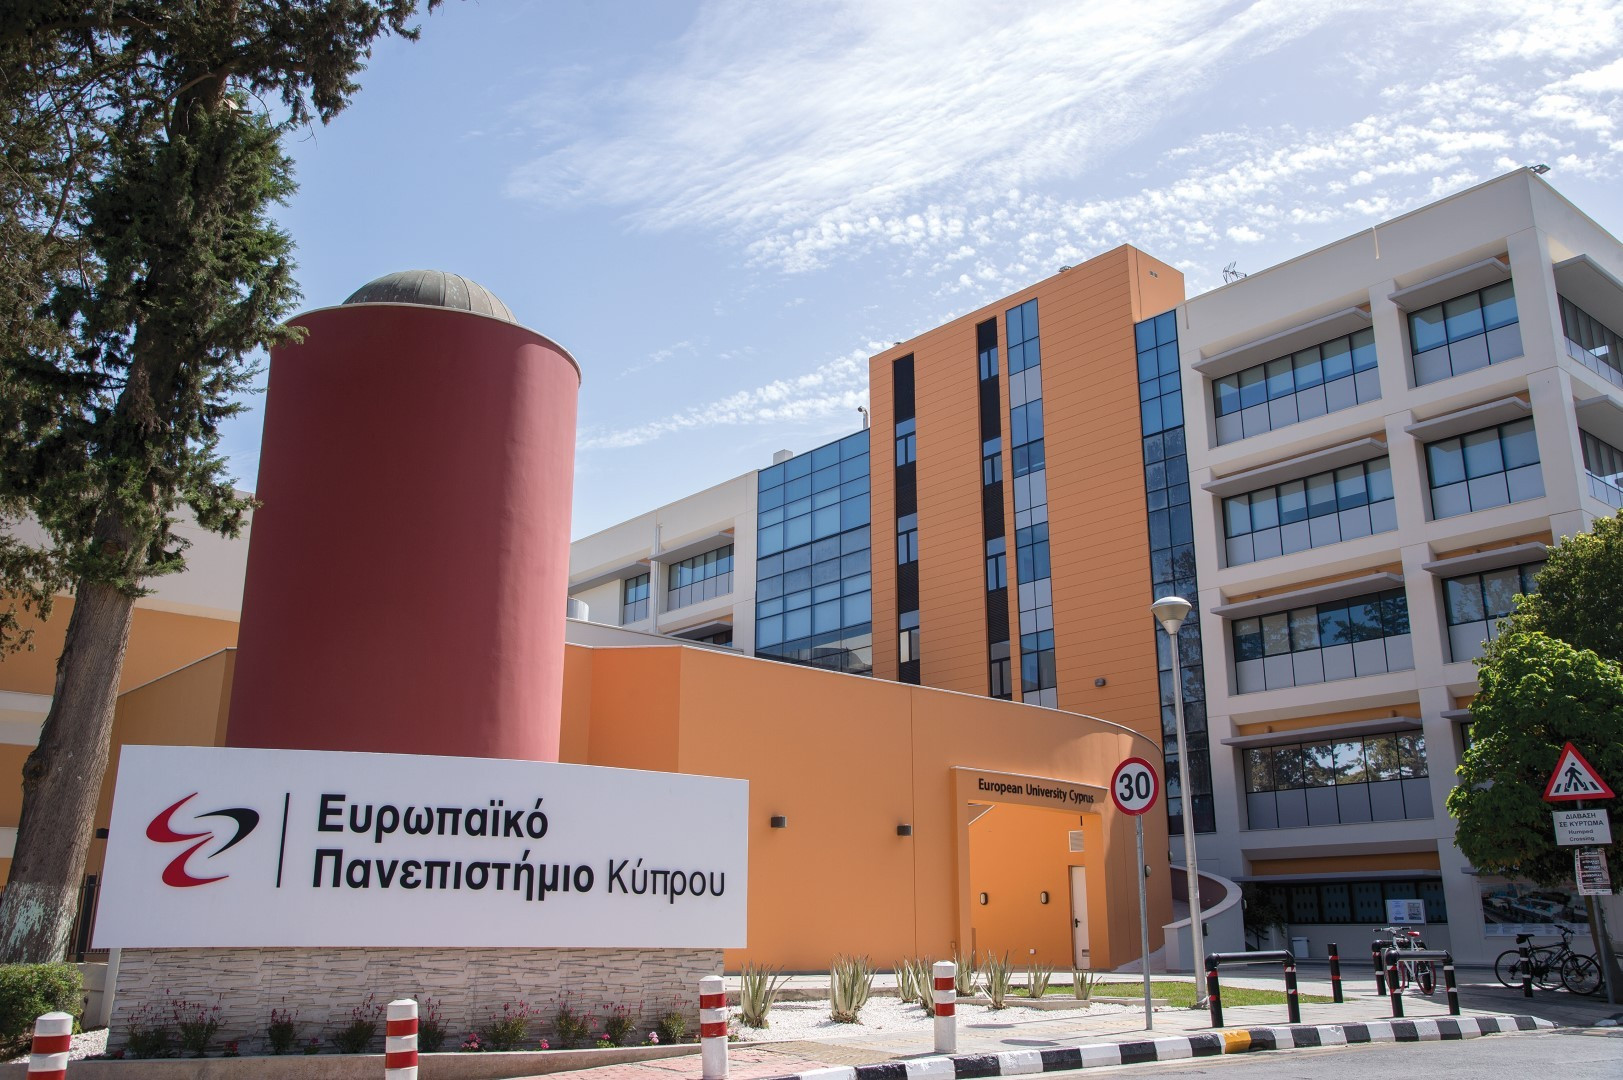 Ευρωπαϊκό Πανεπιστήμιο Κύπρου – Virtual presentation: Programs of Study and Admissions